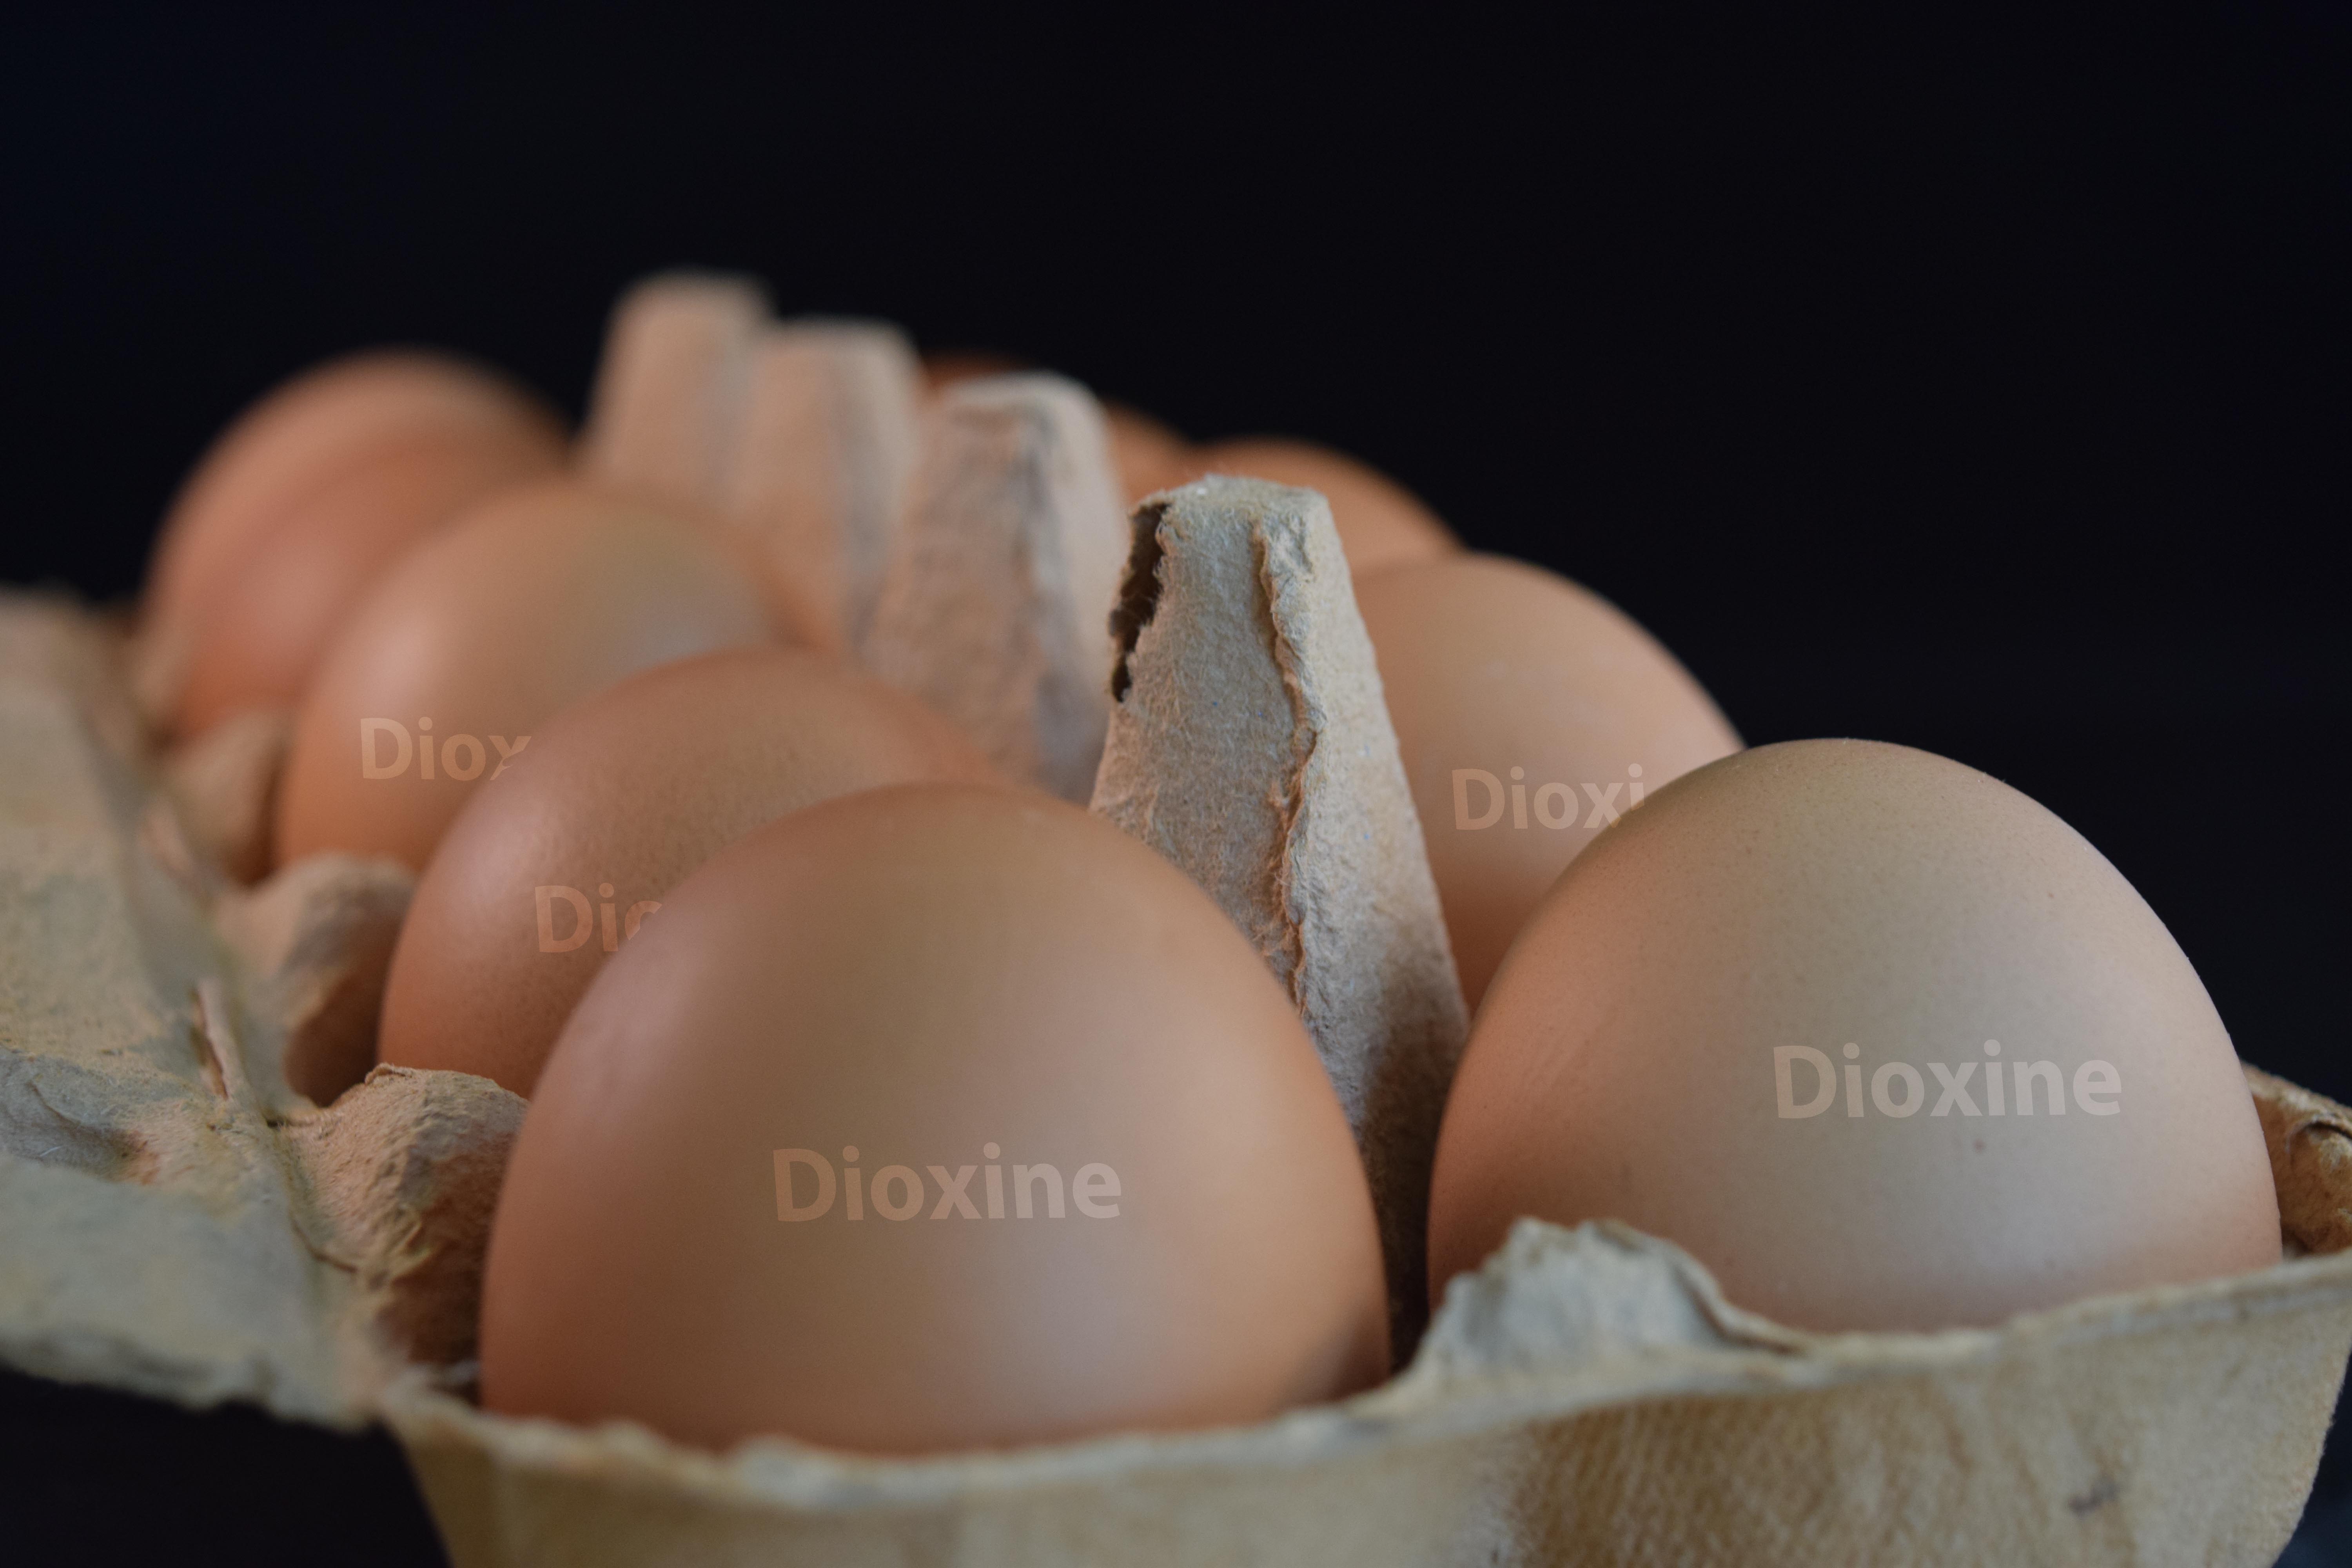 100% Der Eier Enthalten Dioxine. Beim BVL Sind 0,71%. Ein Zaubertrick?